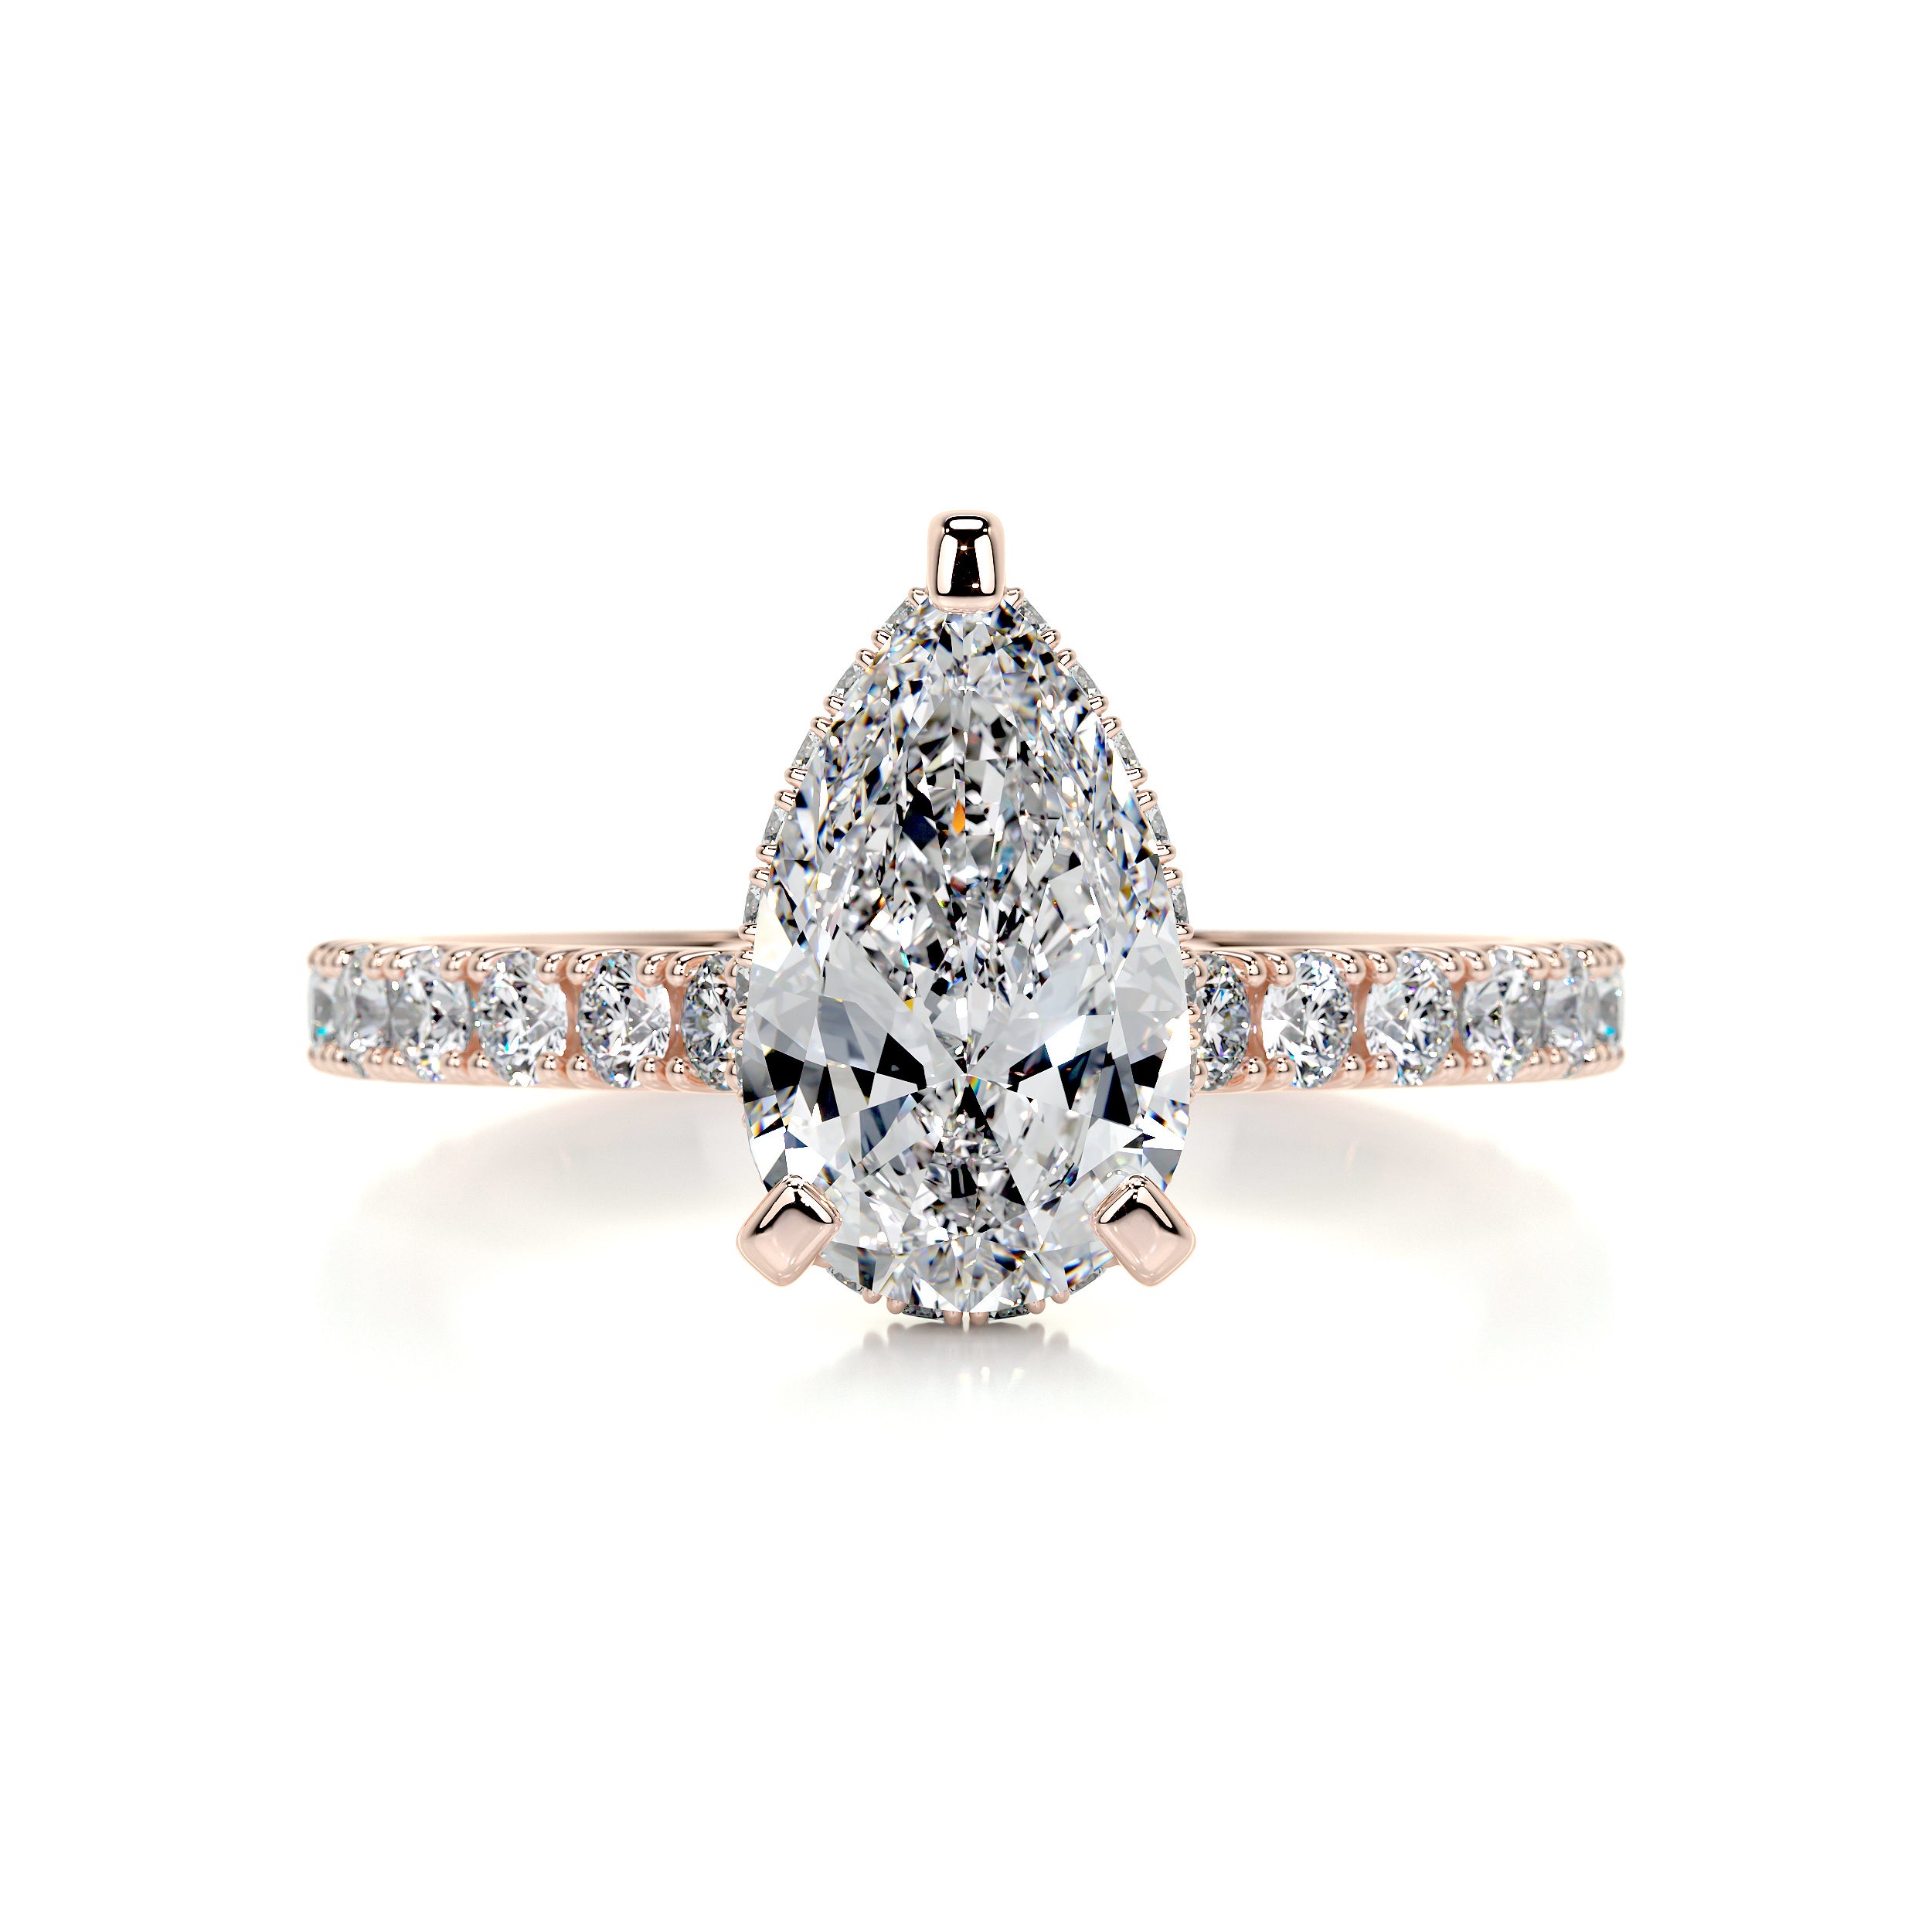 Mia Diamond Engagement Ring   (2 Carat) -14K Rose Gold